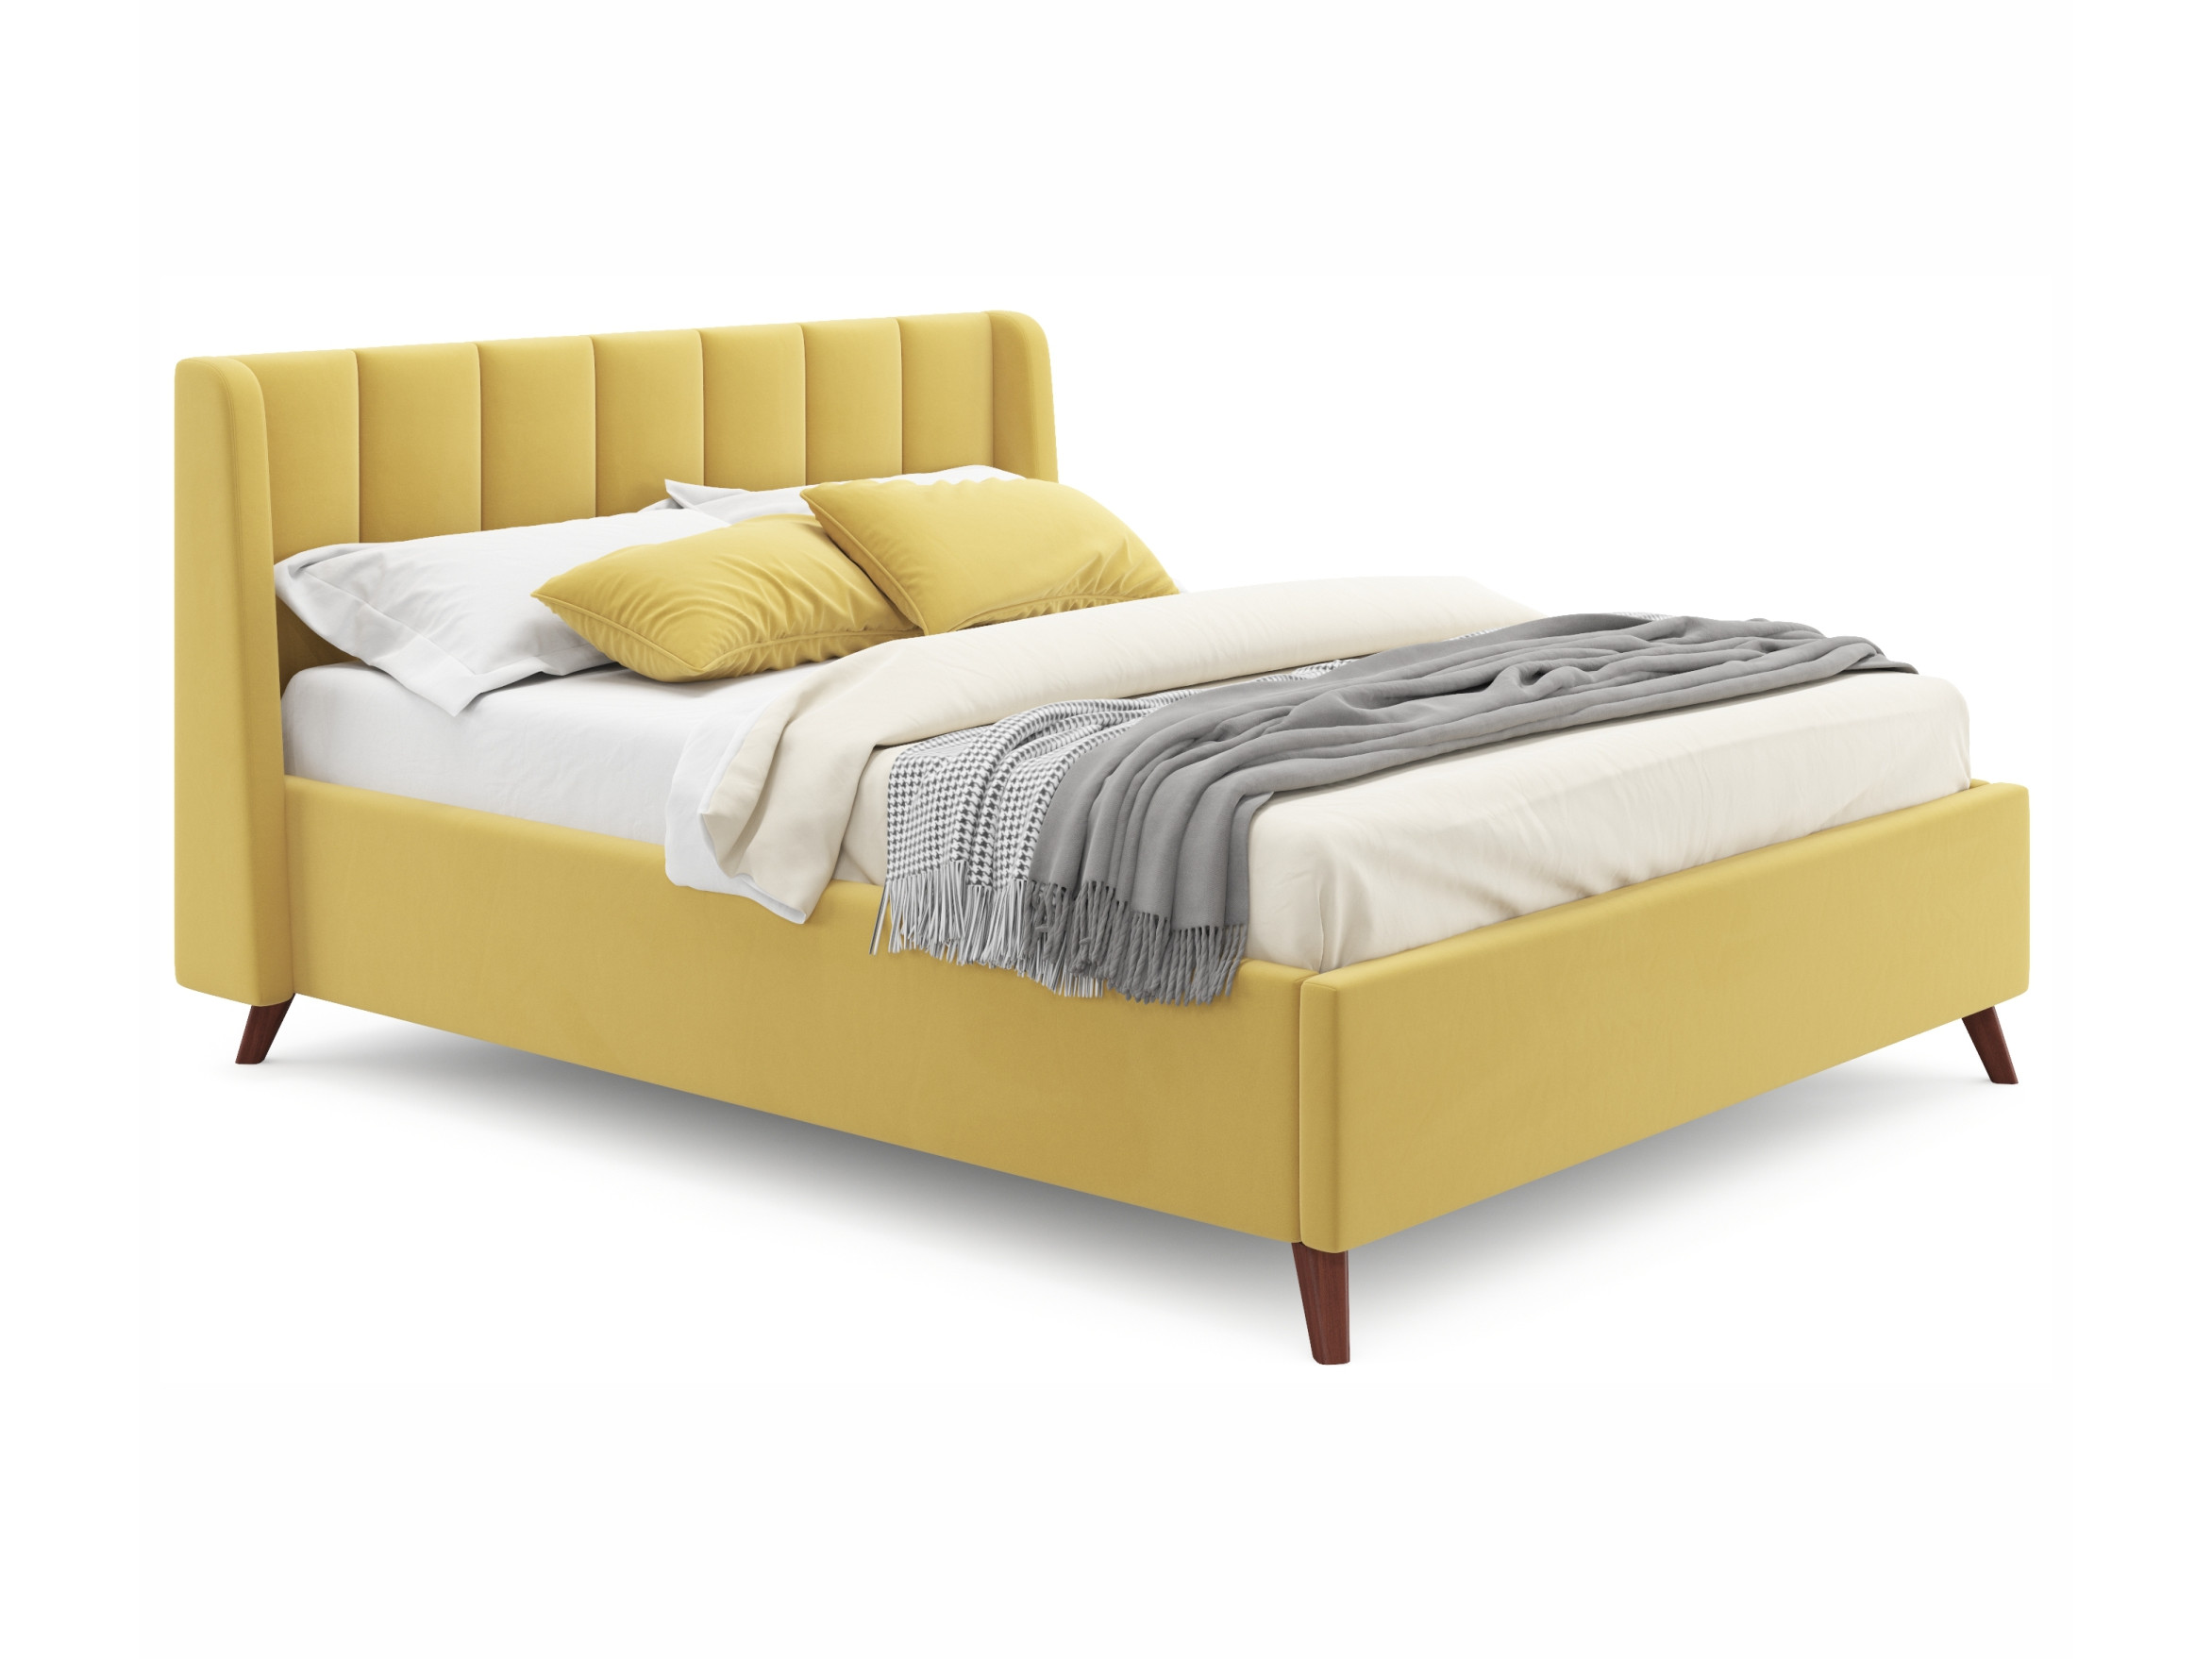 Мягкая кровать Betsi 1600 желтая с подъемным механизмом и матрасом АСТРА желтый, Желтый, Велюр, ДСП